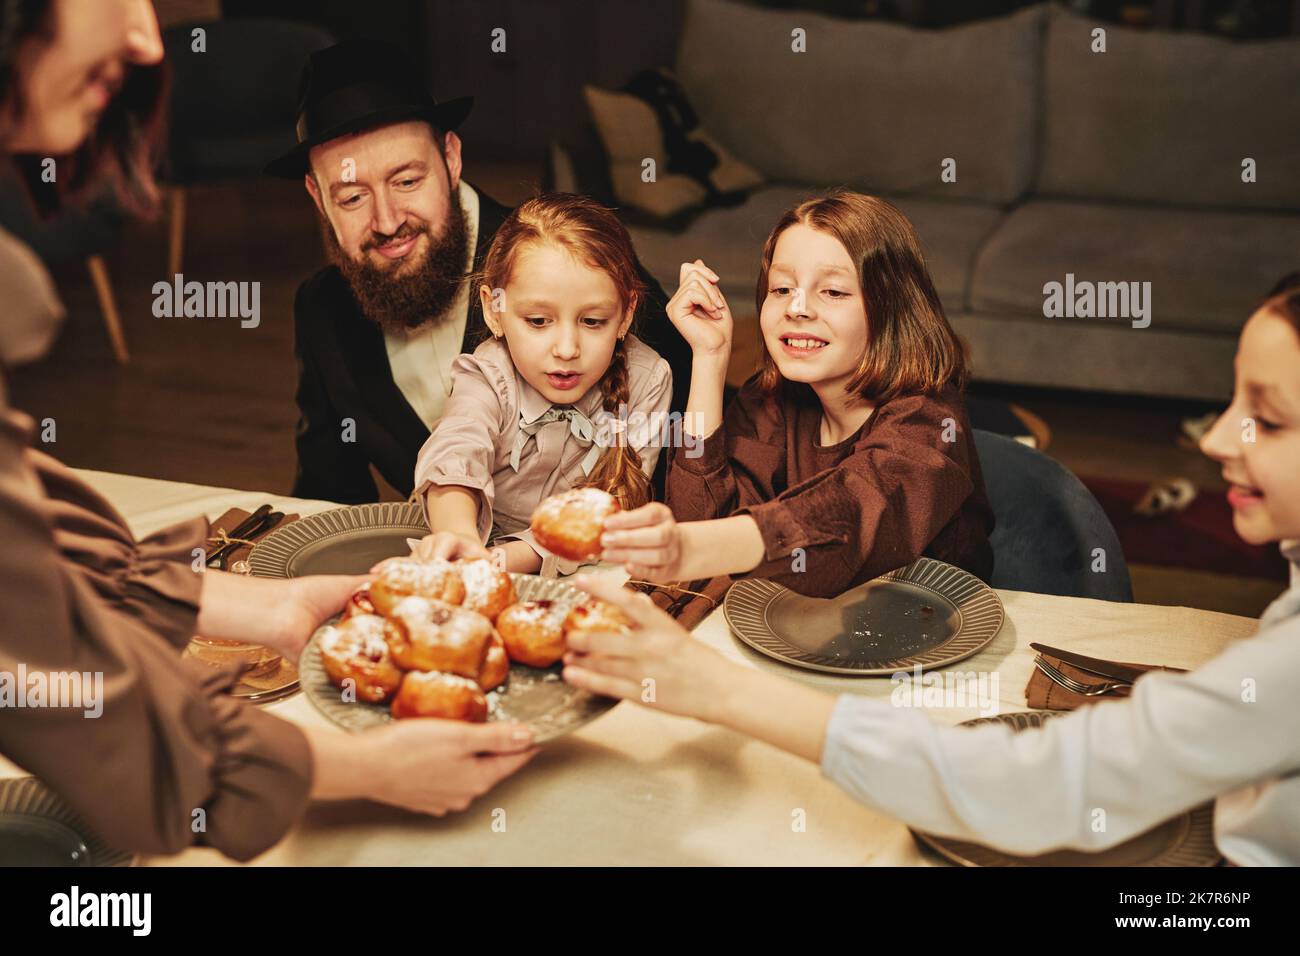 Ritratto della famiglia ebraica ortodossa con i bambini che gustano dolci fatti in casa al tavolo da pranzo Foto Stock